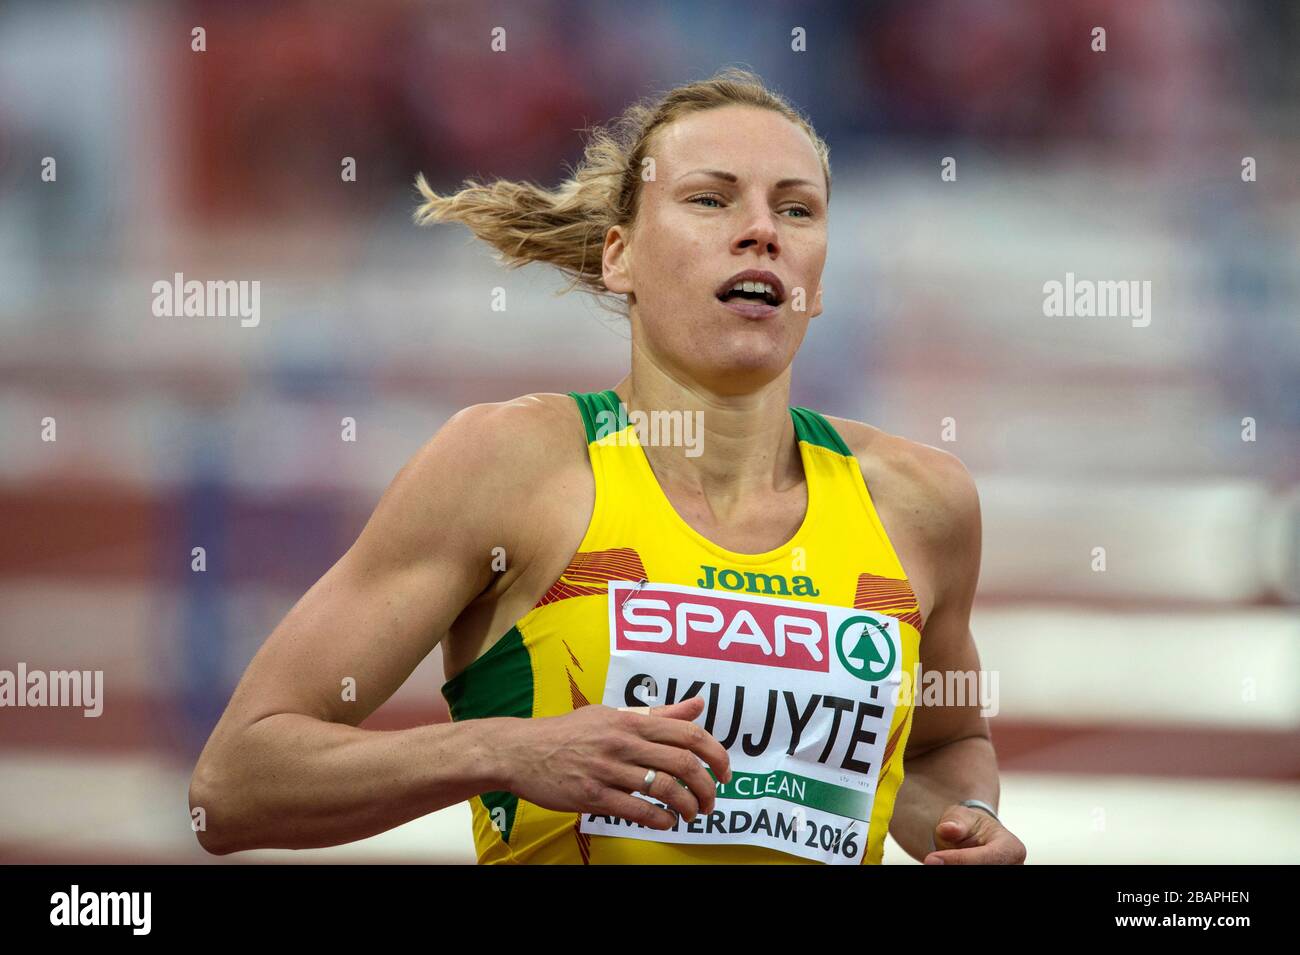 Lithuanian athlete Austra Skujyte, Olympian, Athletics, Heptathlon Stock Photo